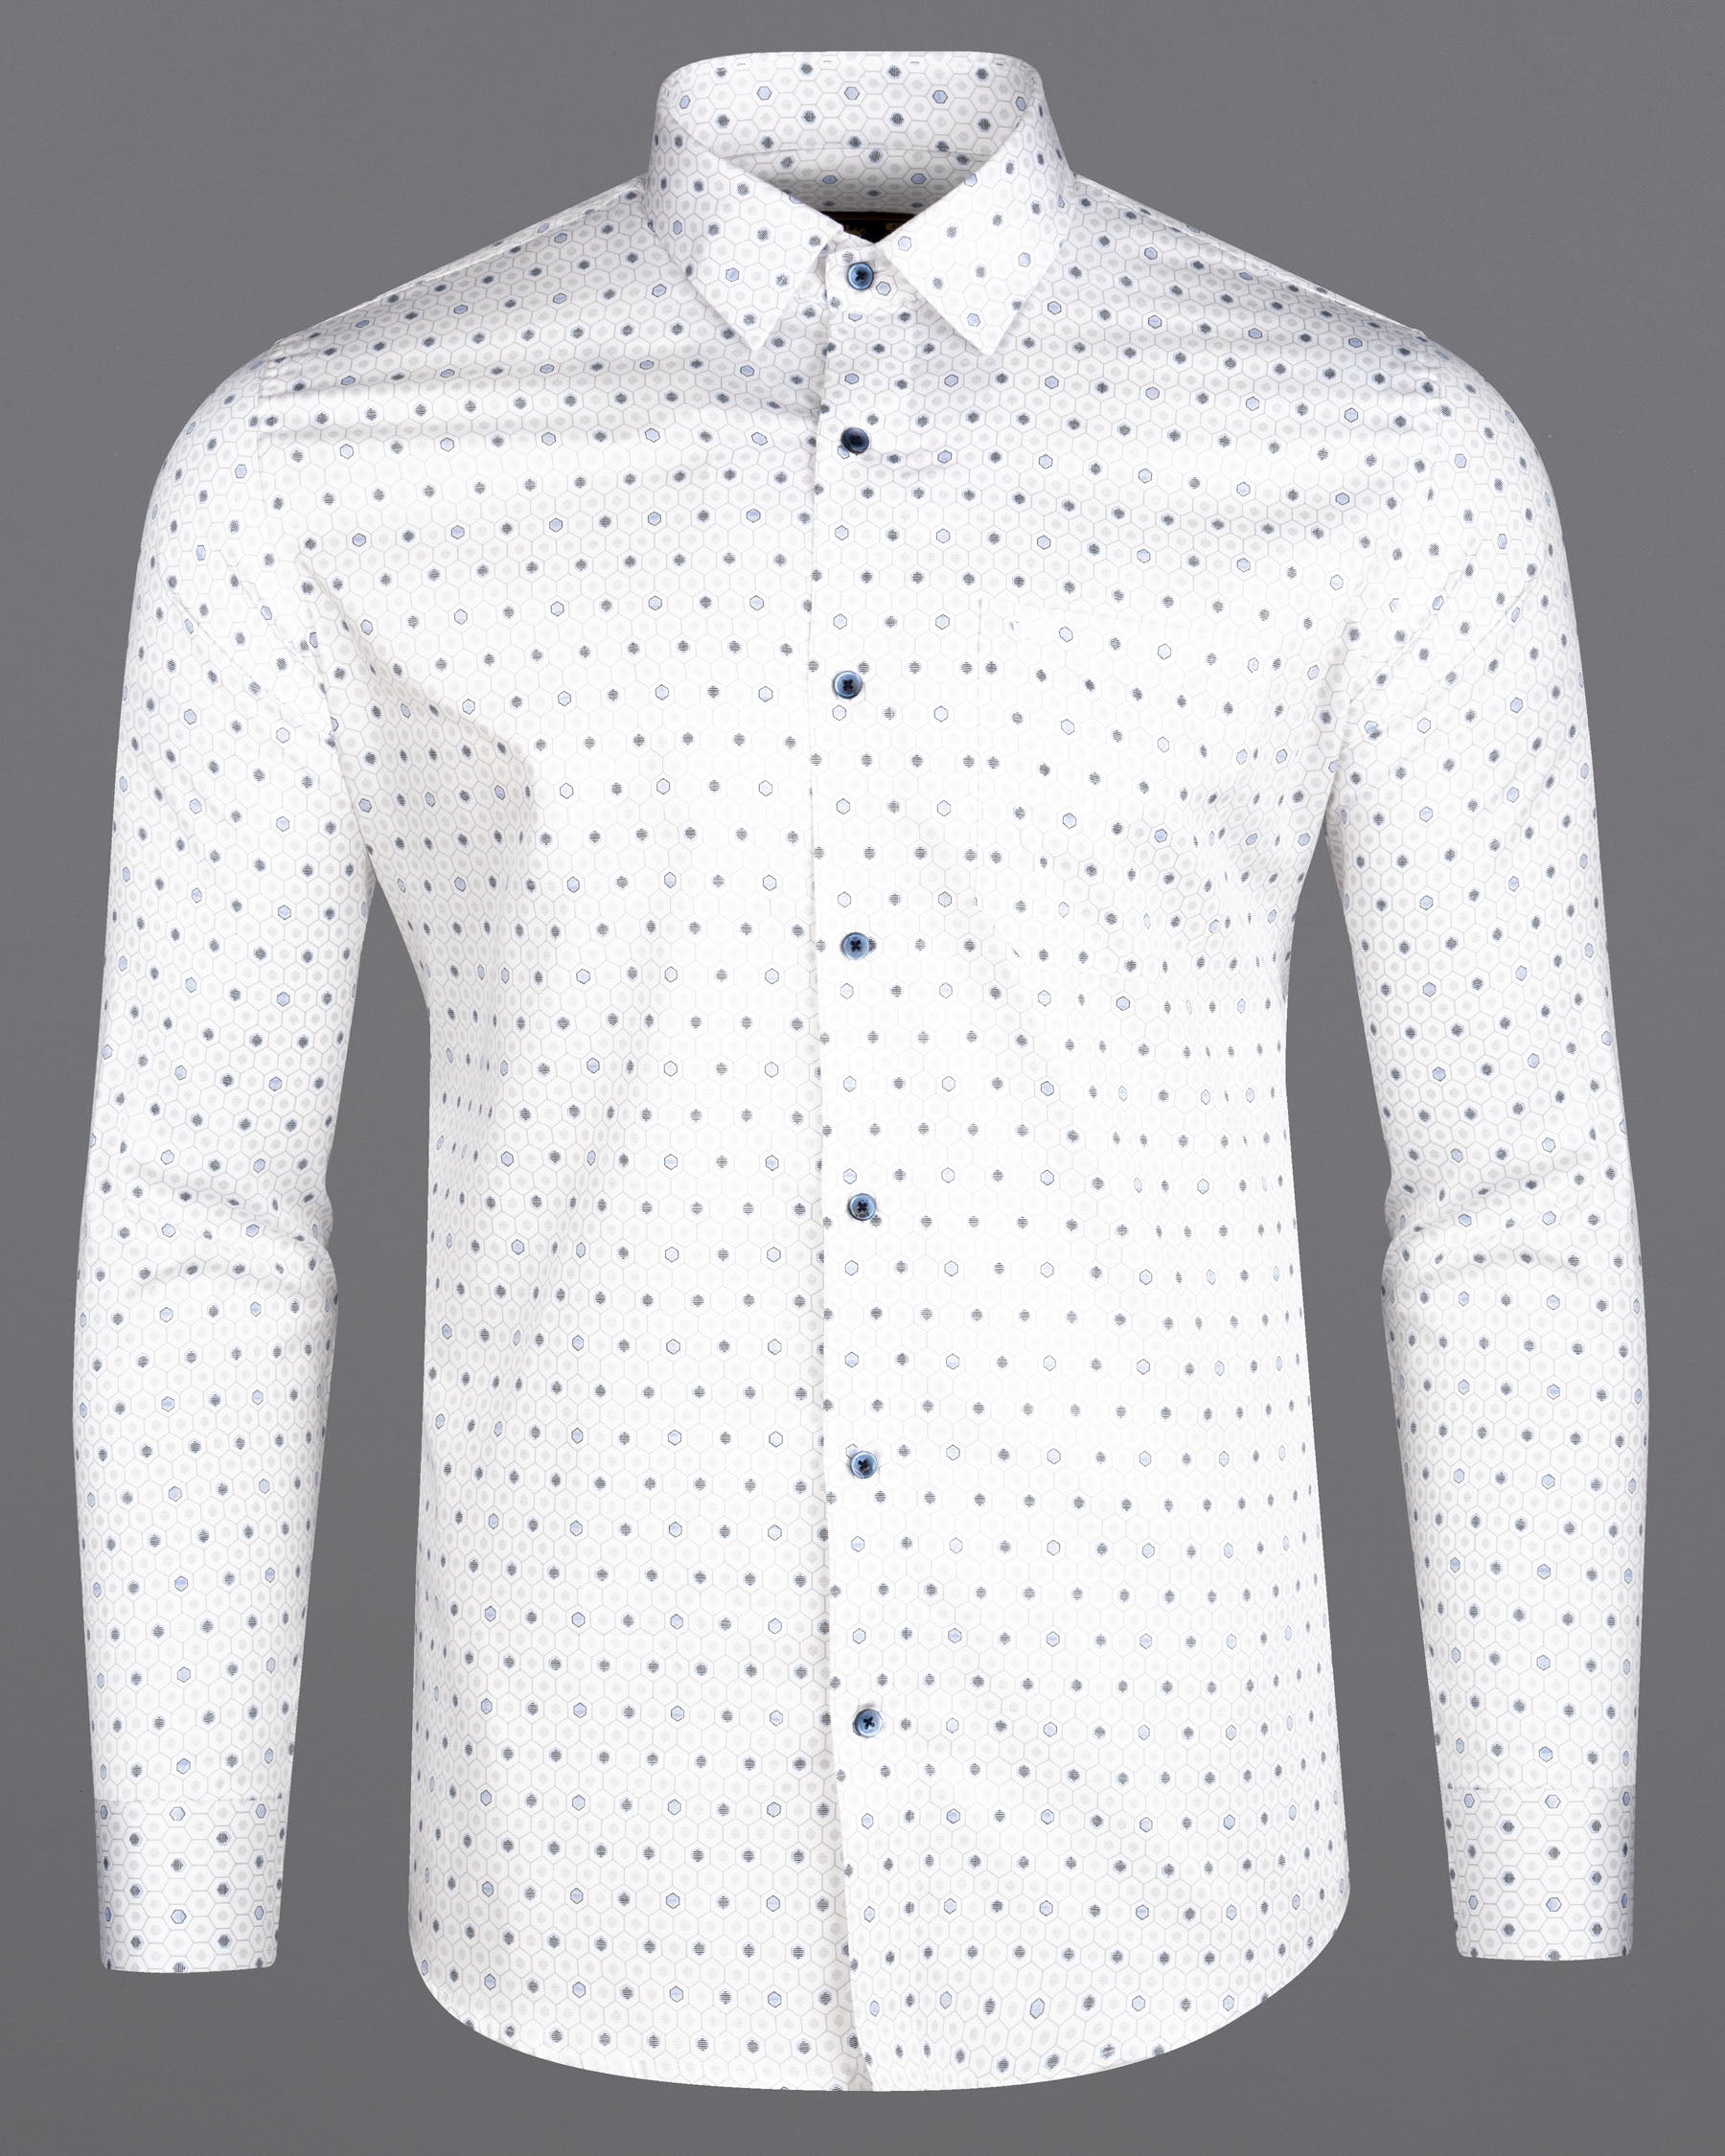 Bright White Hexagon Printed Super Soft Premium Cotton Shirt